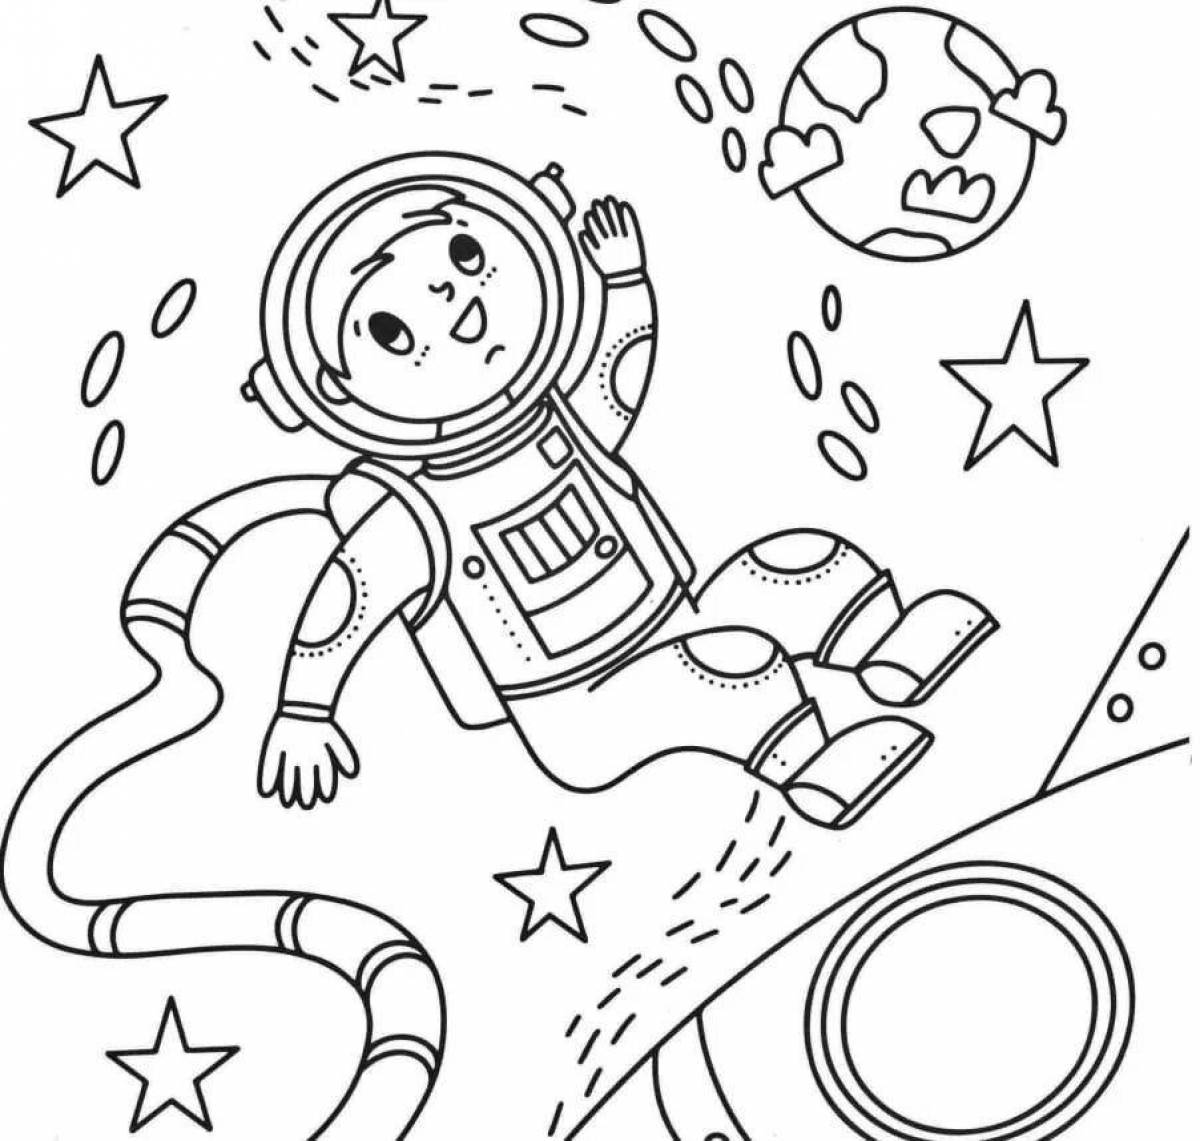 Раскраска про космос для детей 3 лет. Раскраска. В космосе. Космос раскраска для детей. Космические раскраски для детей. Раскраска космонавтика.